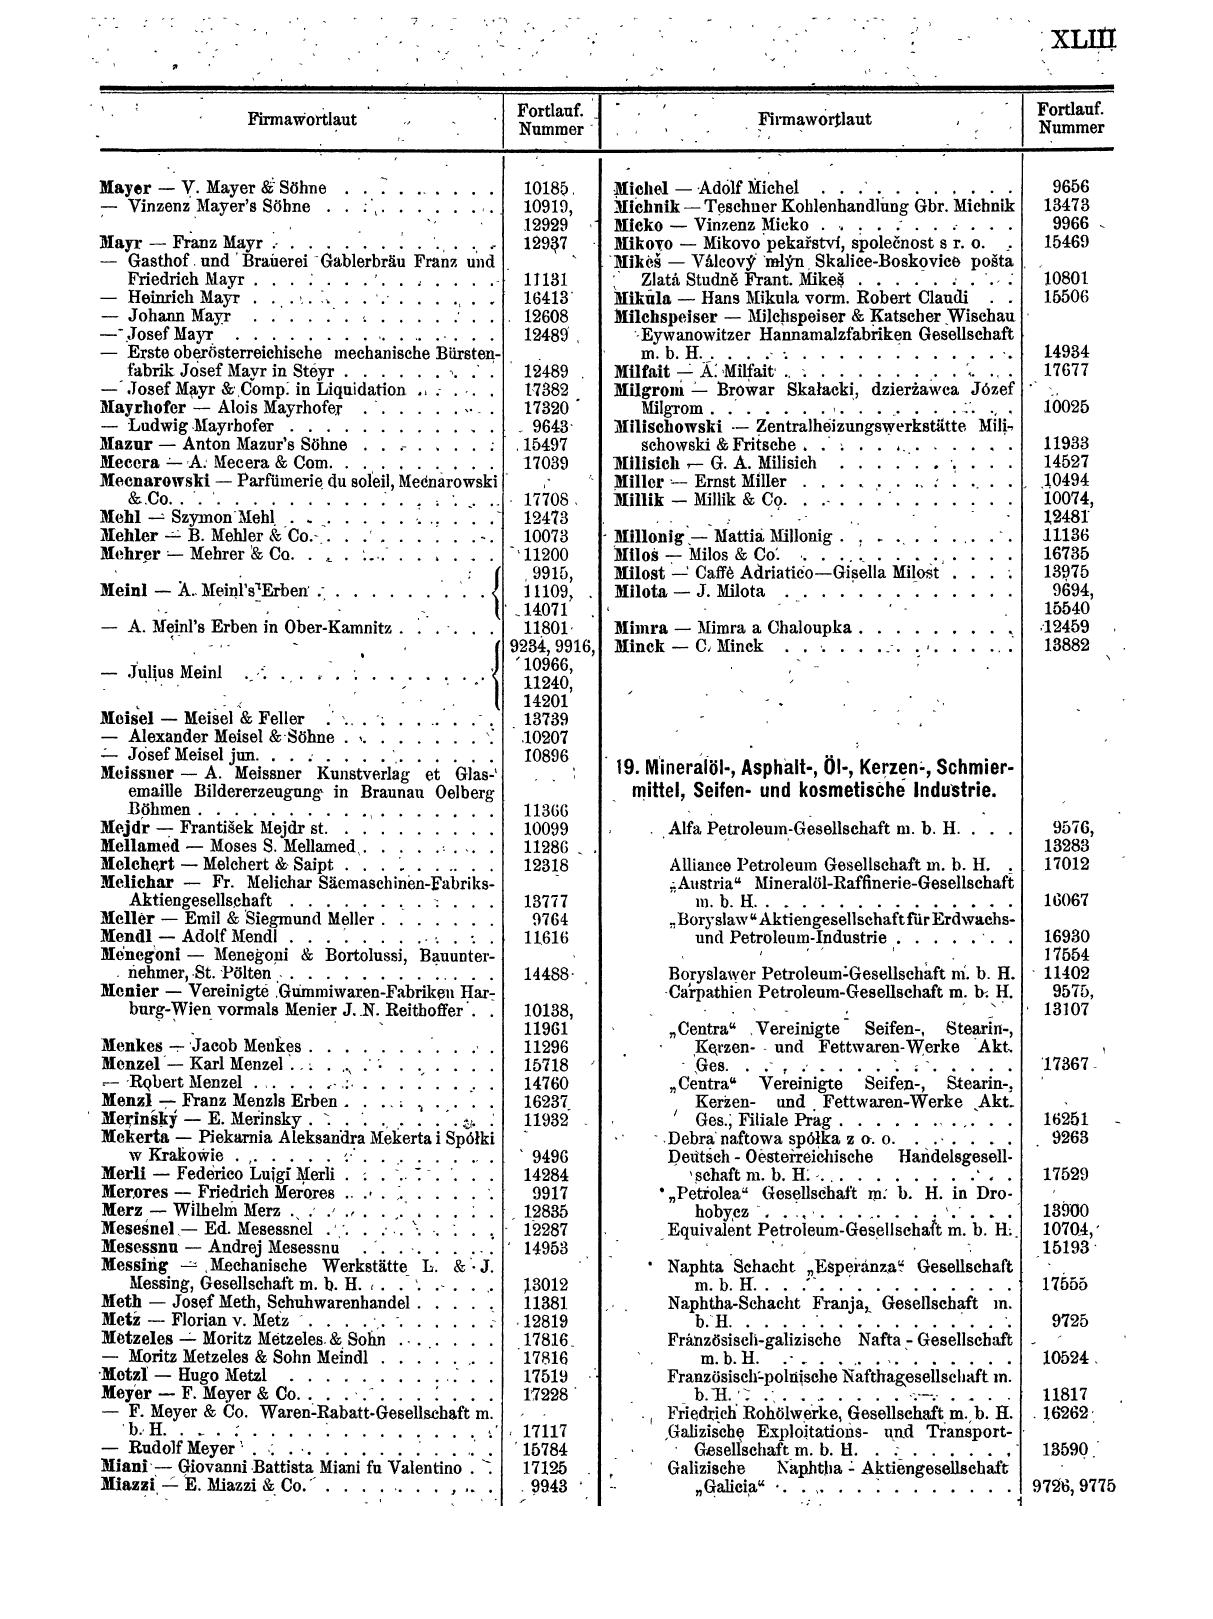 Zentralblatt für die Eintragungen in das Handelsregister 1913, Teil 2 - Seite 47